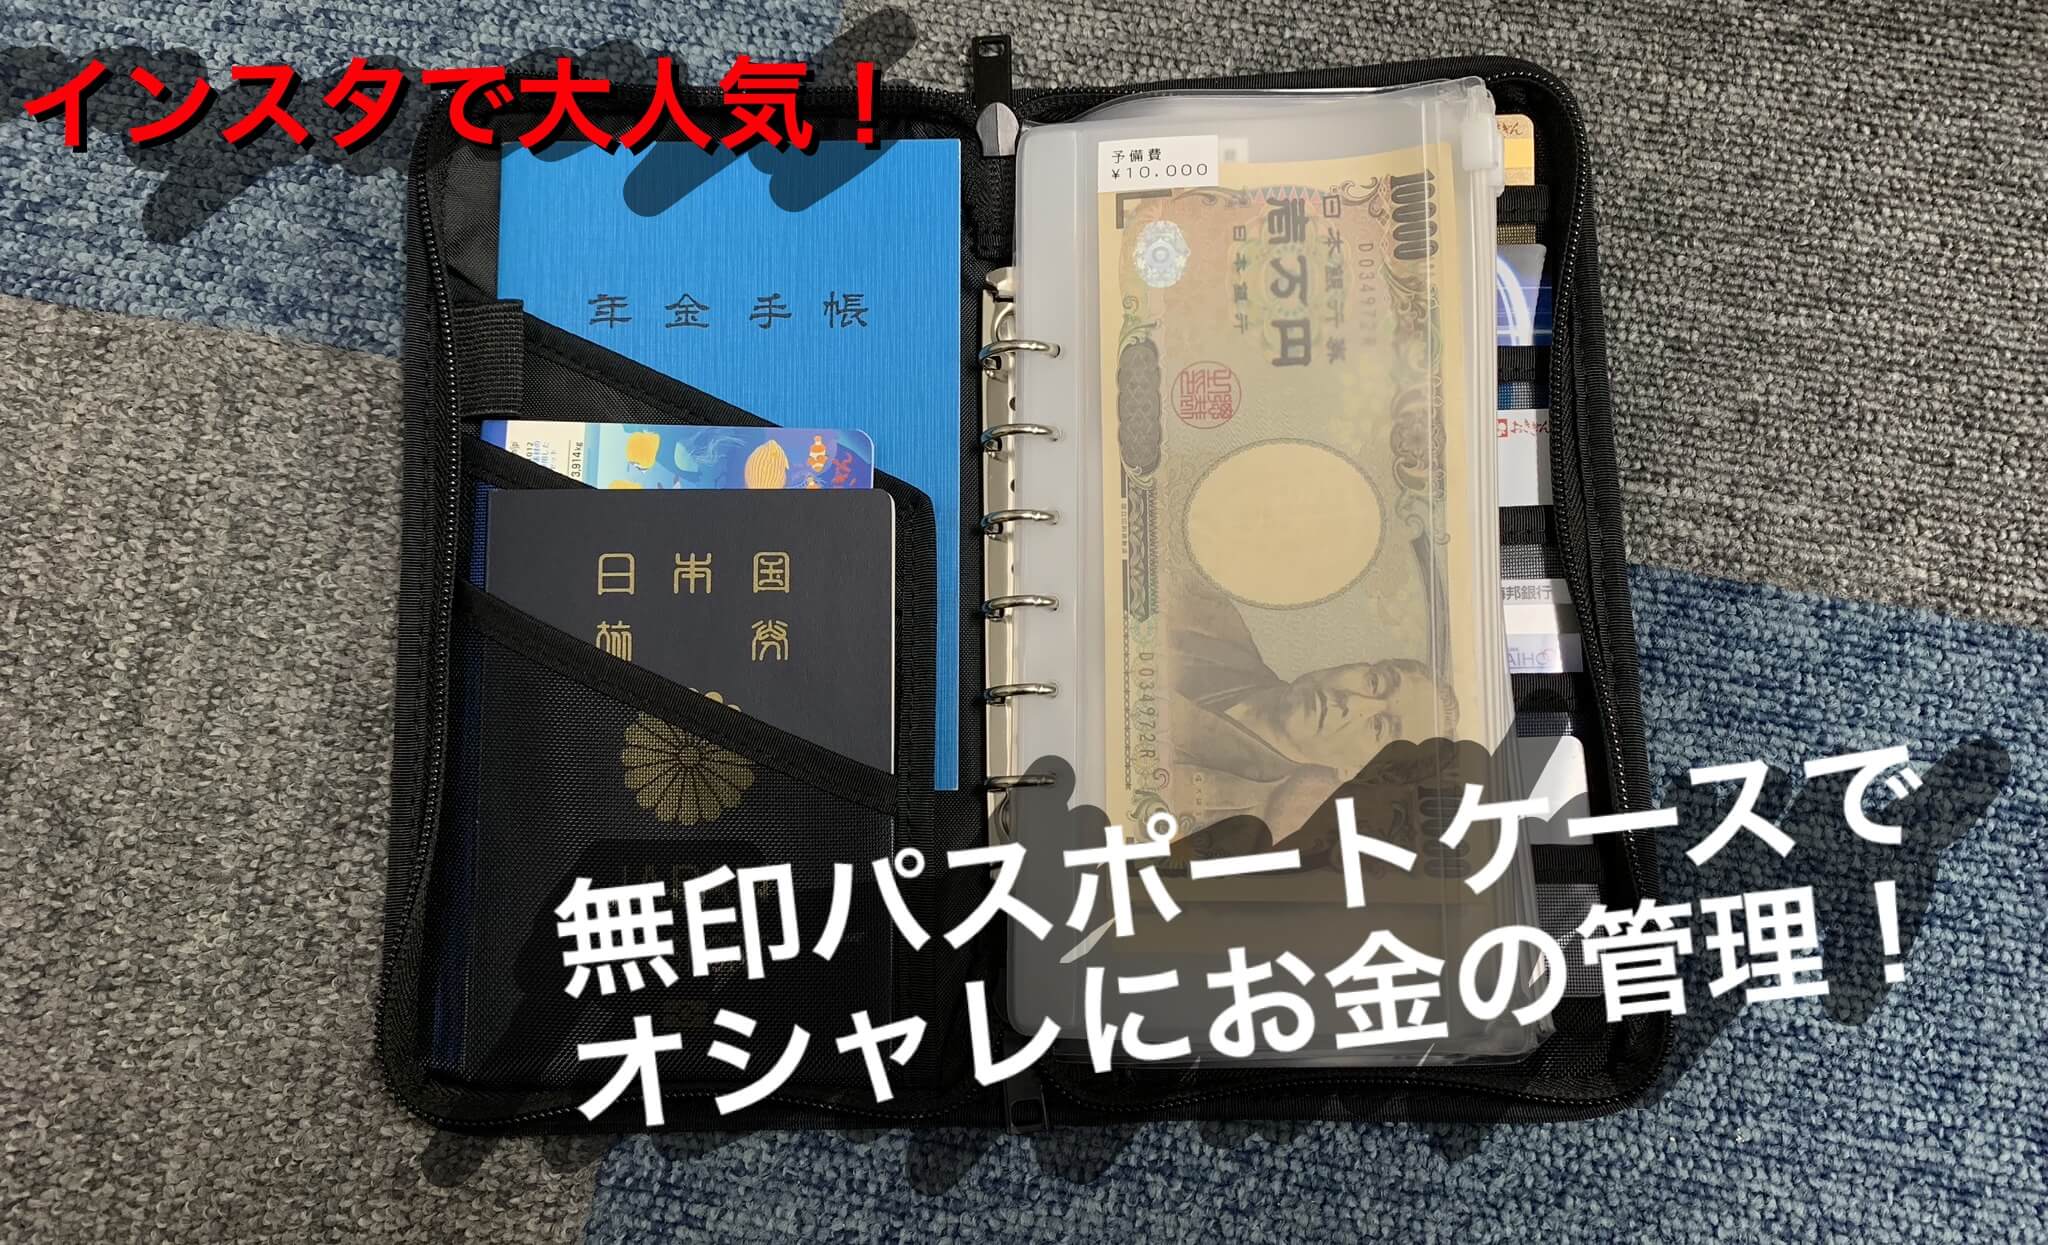 インスタで大人気 無印パスポートケースでお金を 見える化 してオシャレに家計管理をしよう Taamii Com たーみーどっとこむ